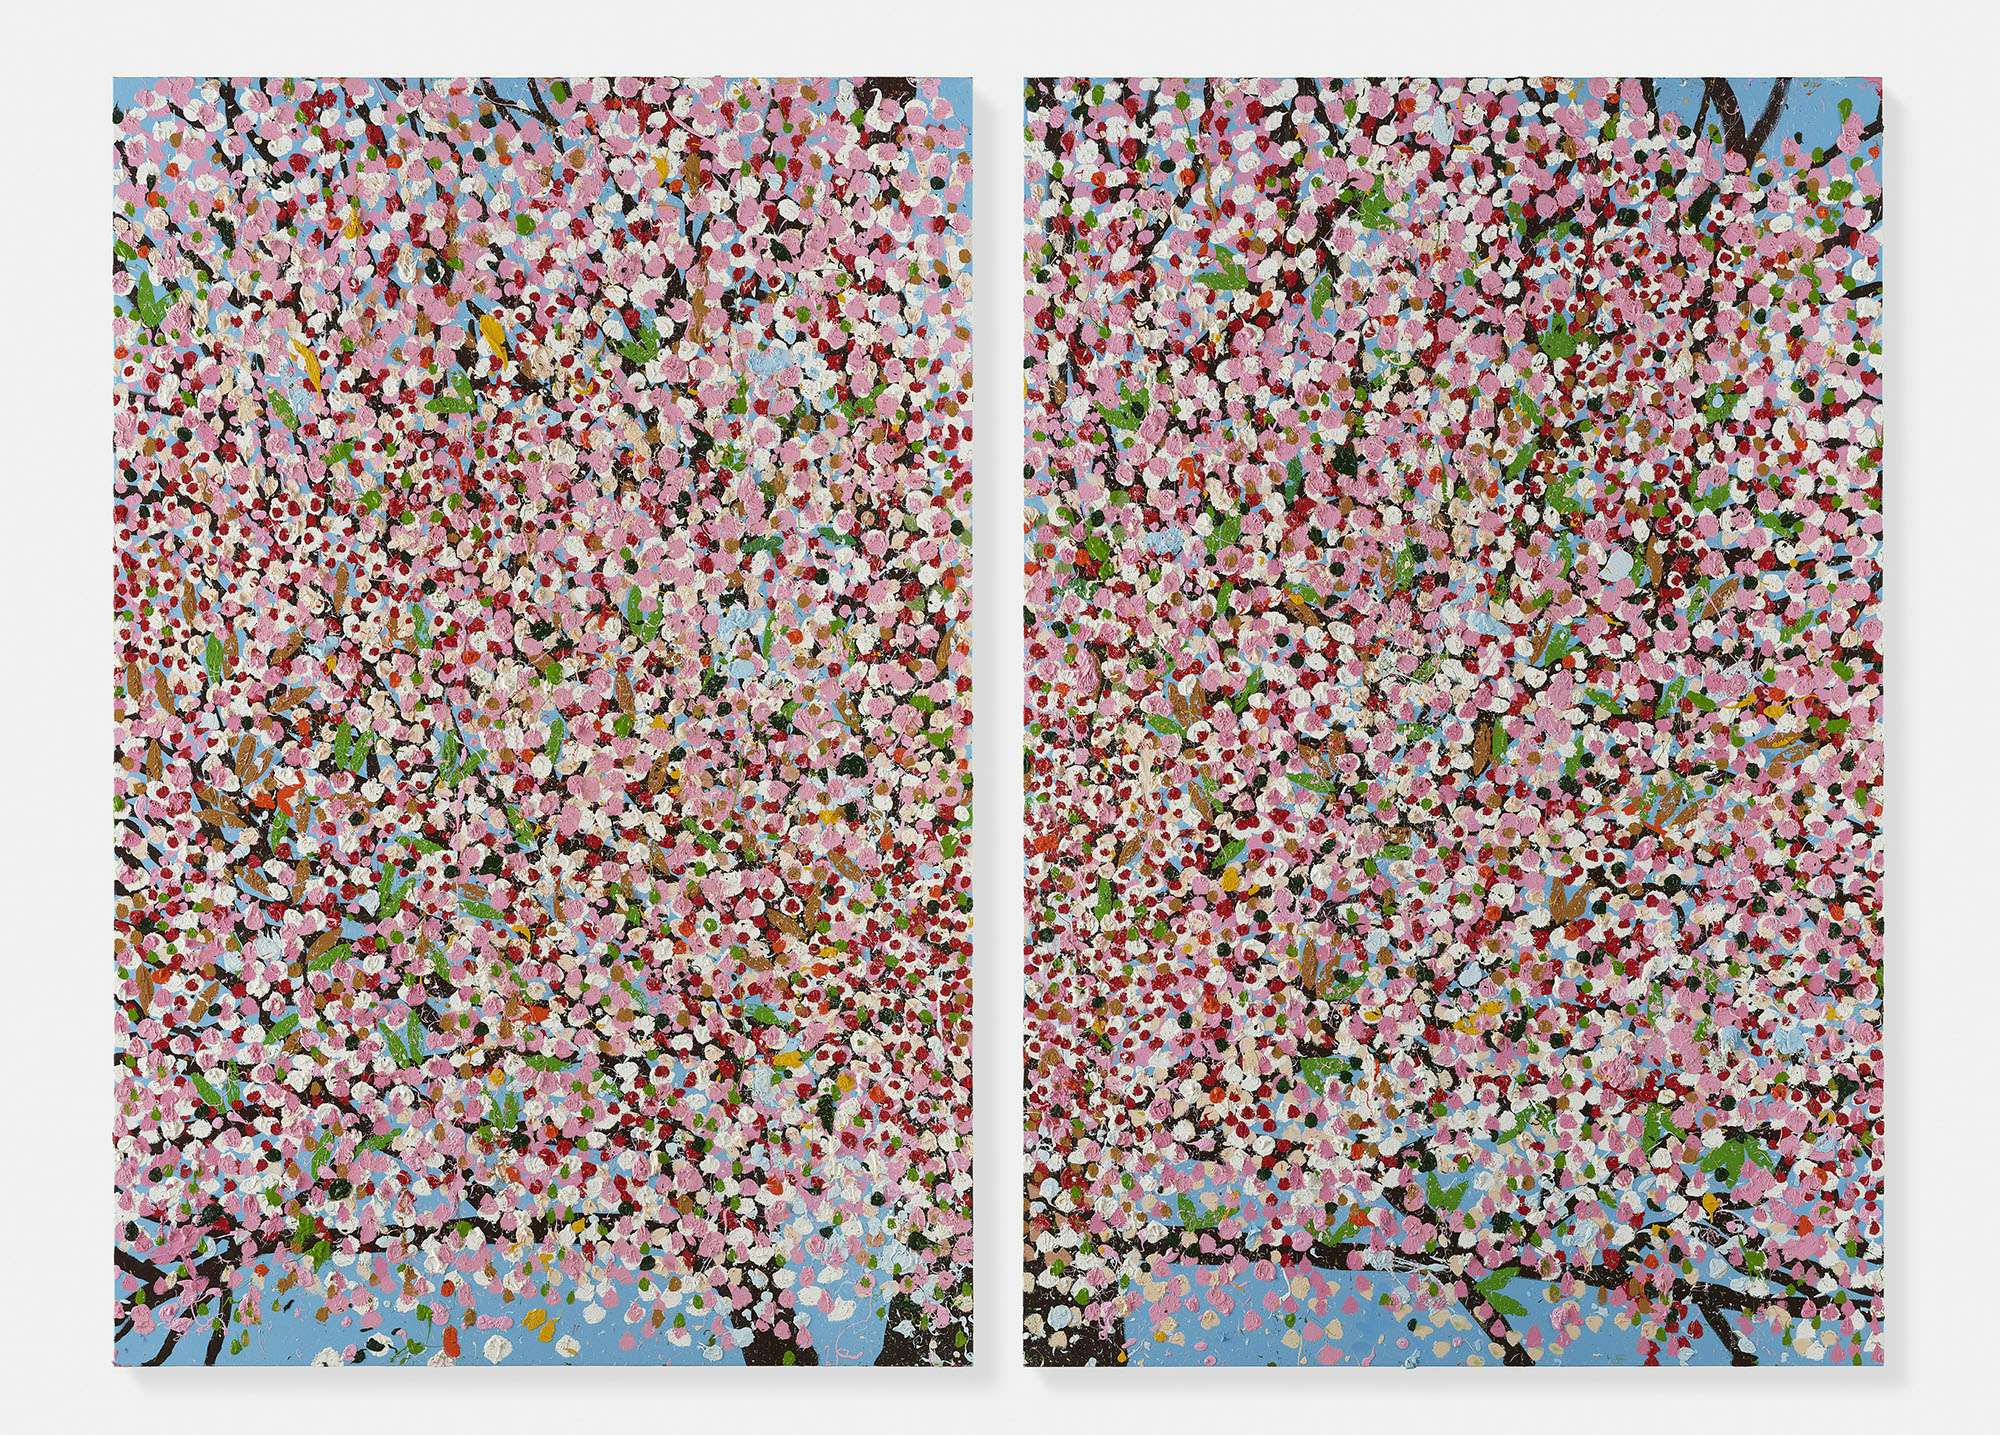 ダミアン・ハーストの新境地は「桜」。パリ・カルティエ現代美術財団で 